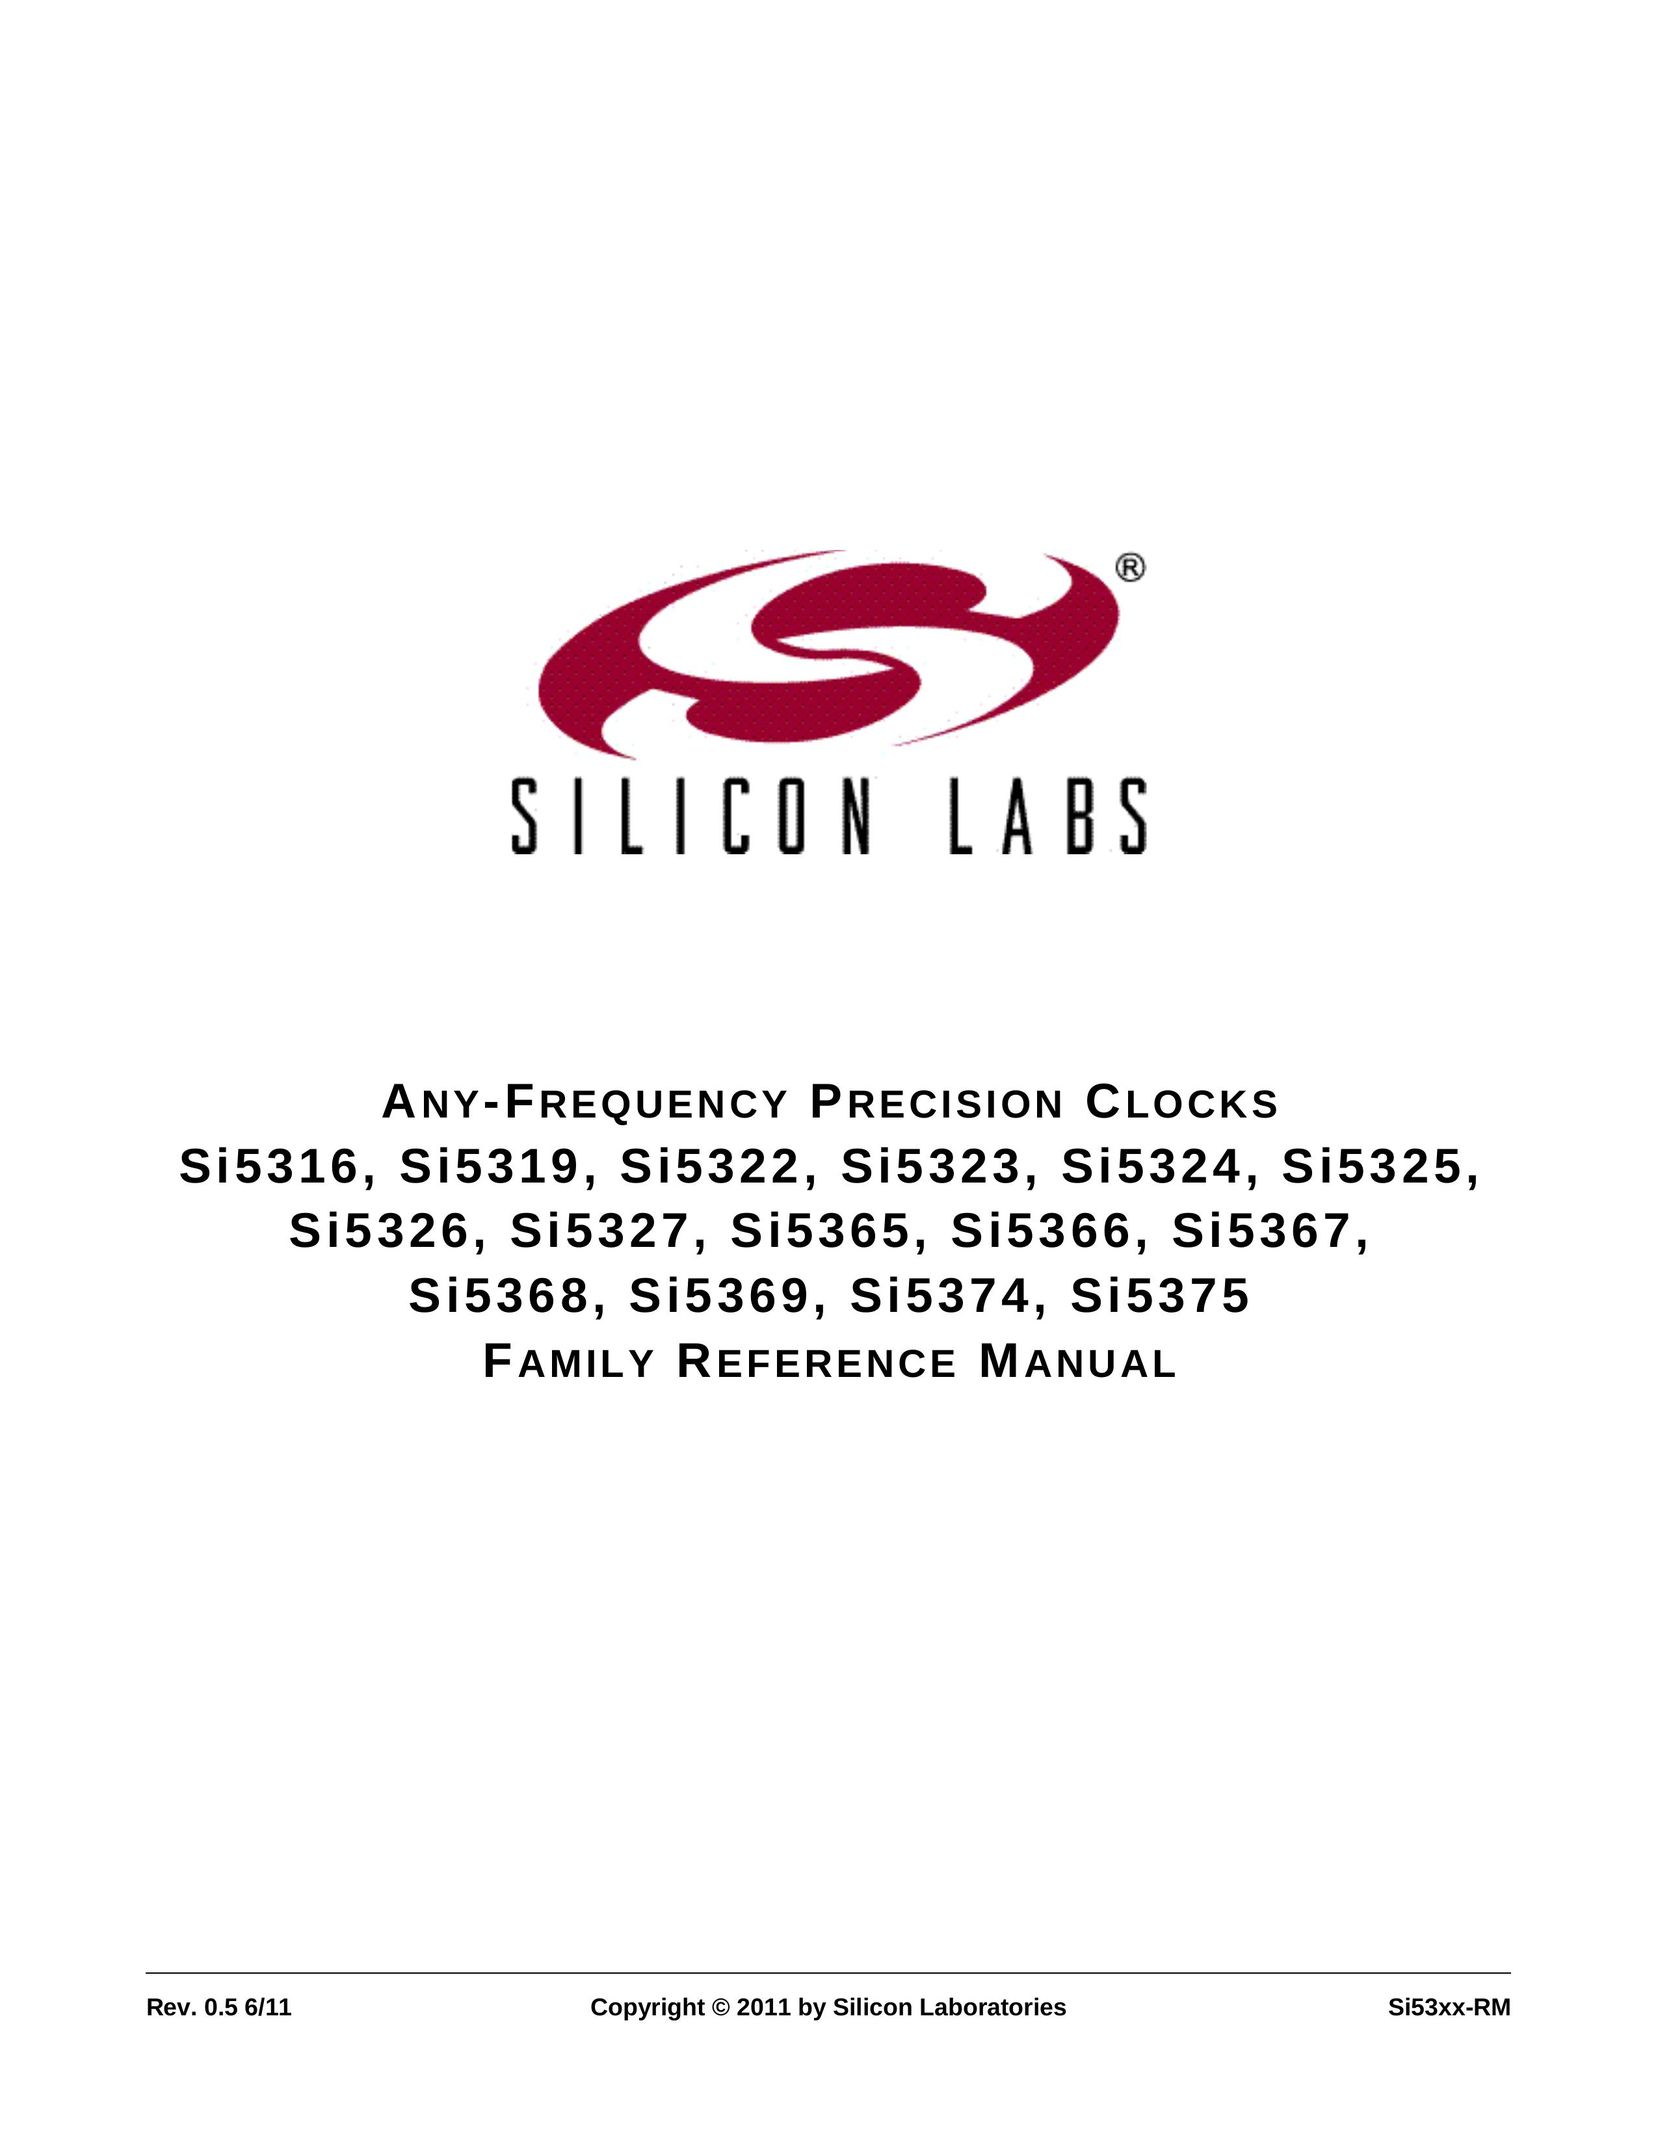 Silicon Laboratories SI5367 Clock User Manual